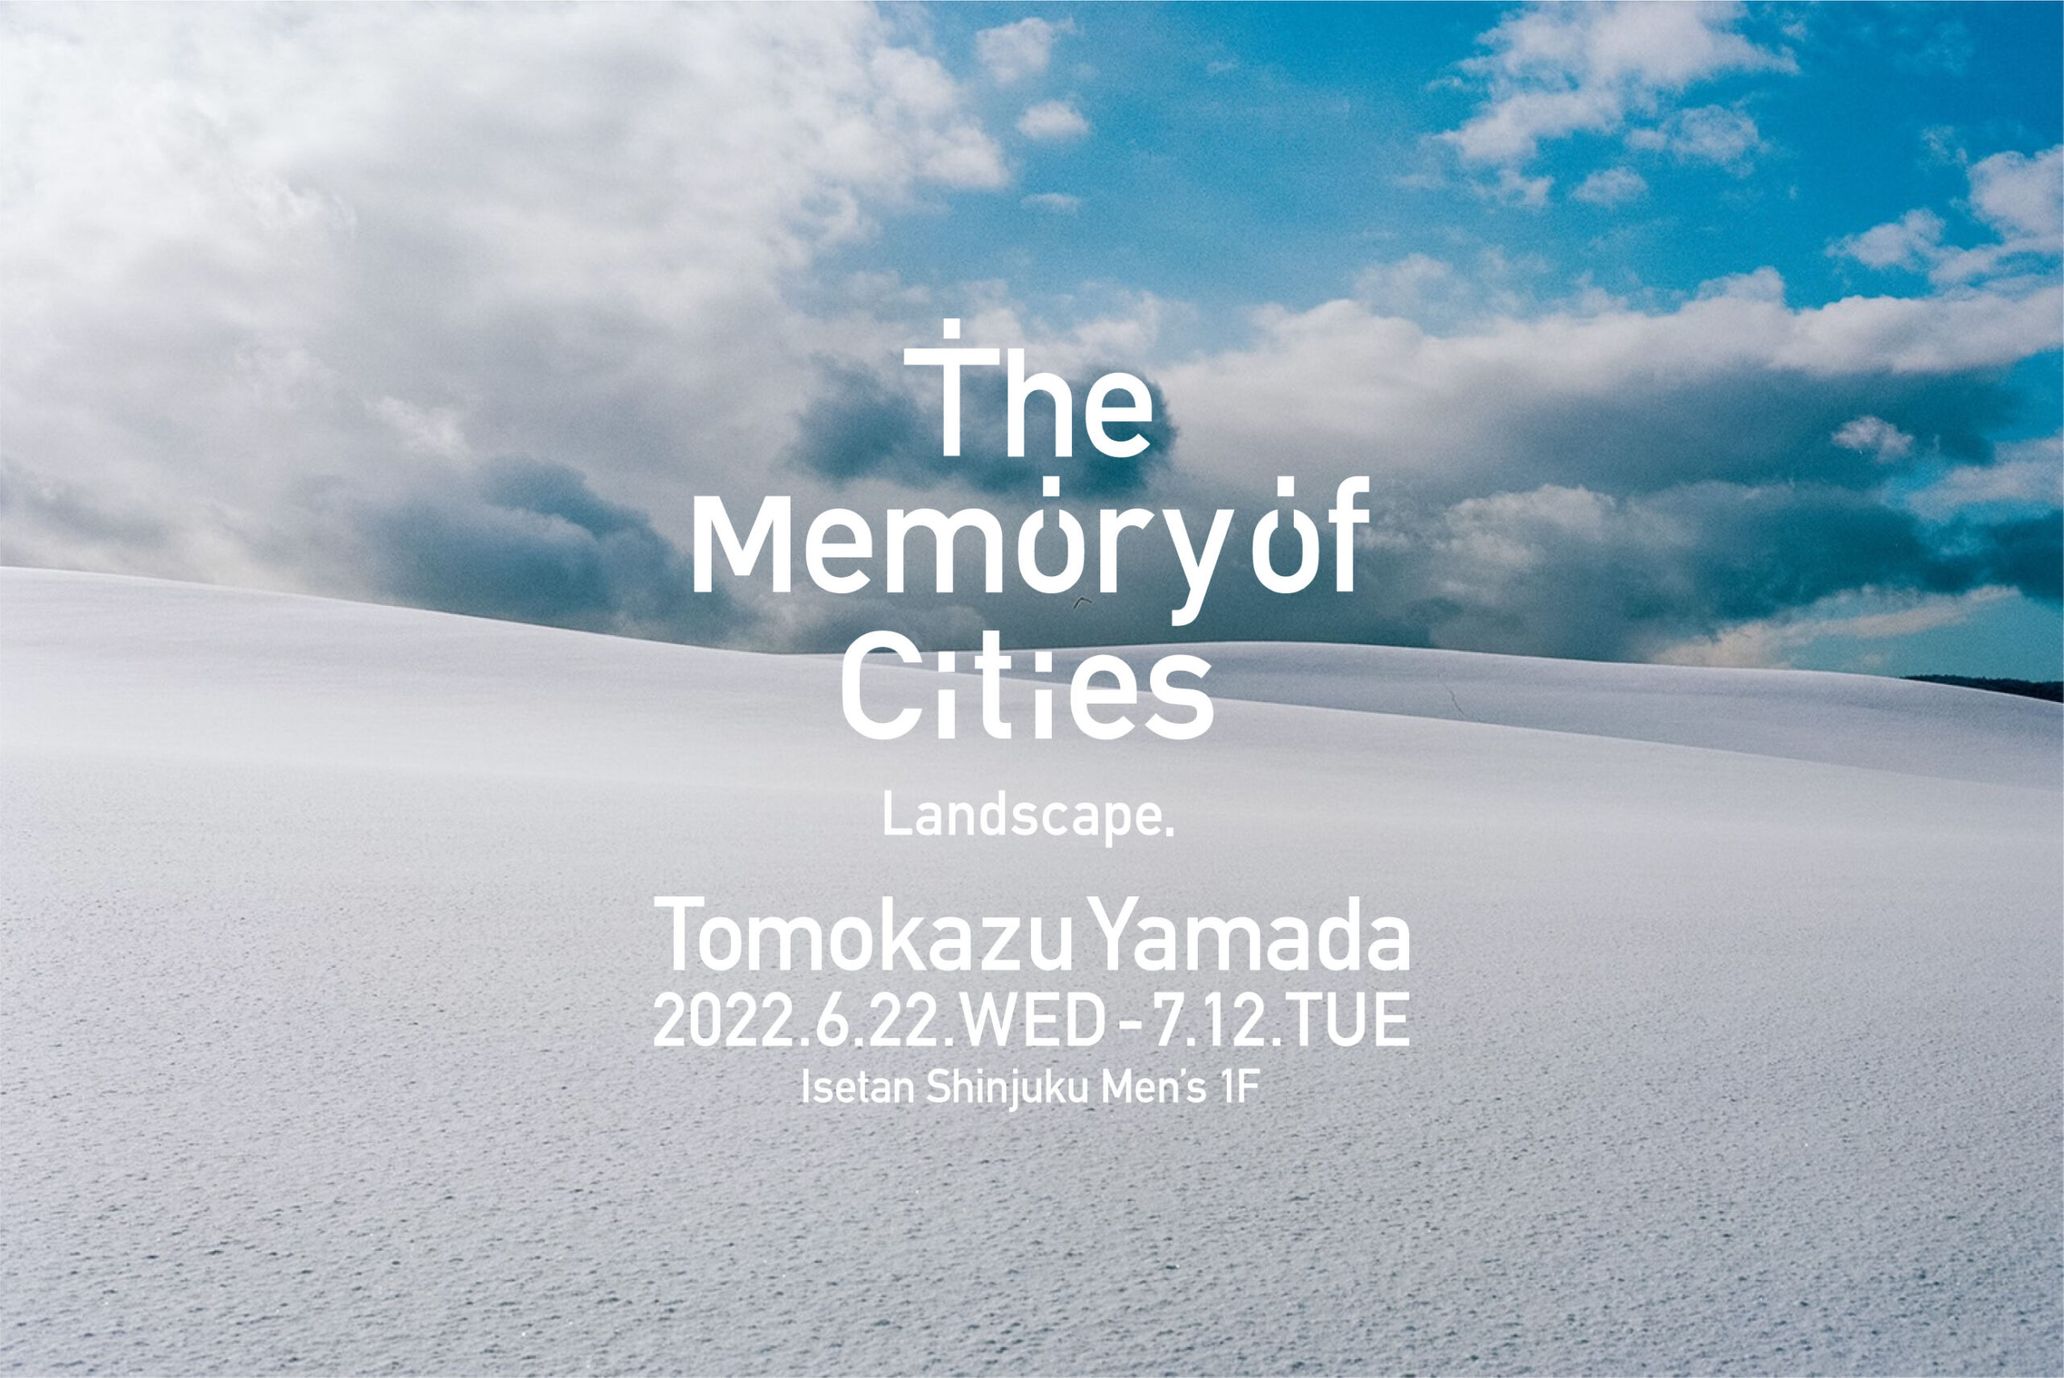 映像作家 / 映像監督の山田智和が写真展「都市の記憶 -Landscape-」開催 - TOKION